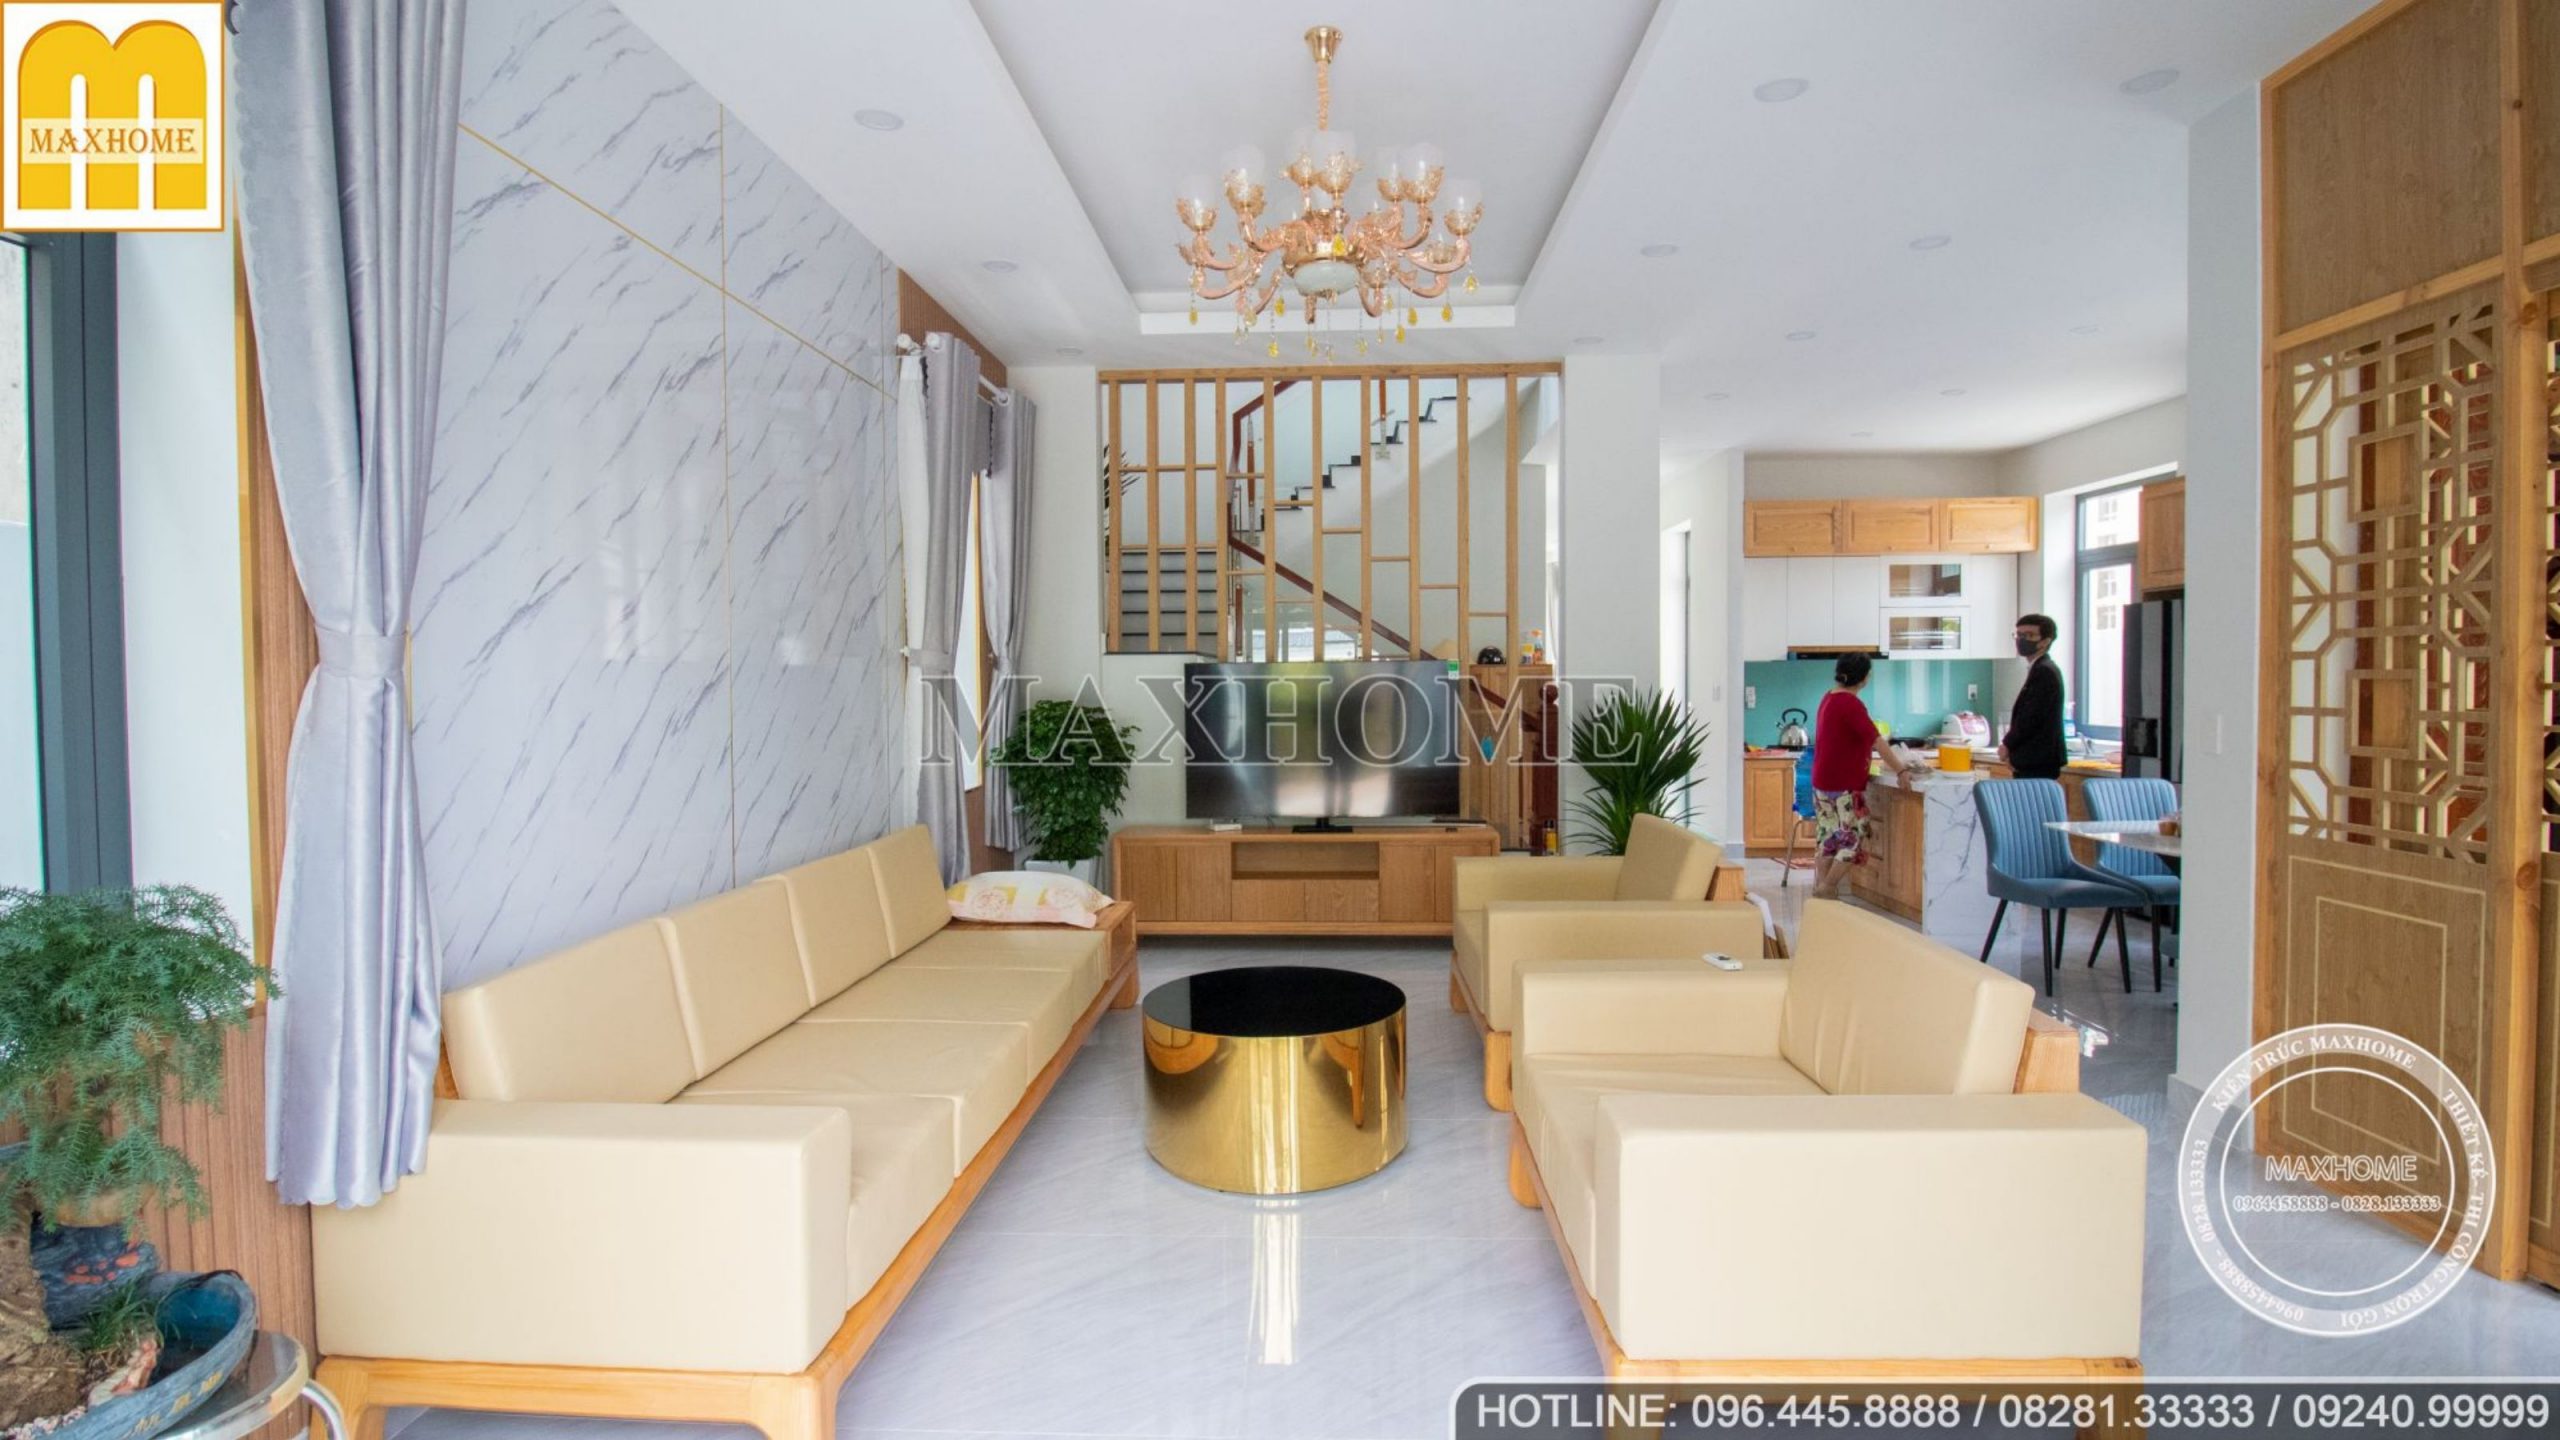 Tham khảo thiết kế nội thất nhà 3 tầng đẹp đầy đủ các phòng NT108068 - Kiến  trúc Angcovat